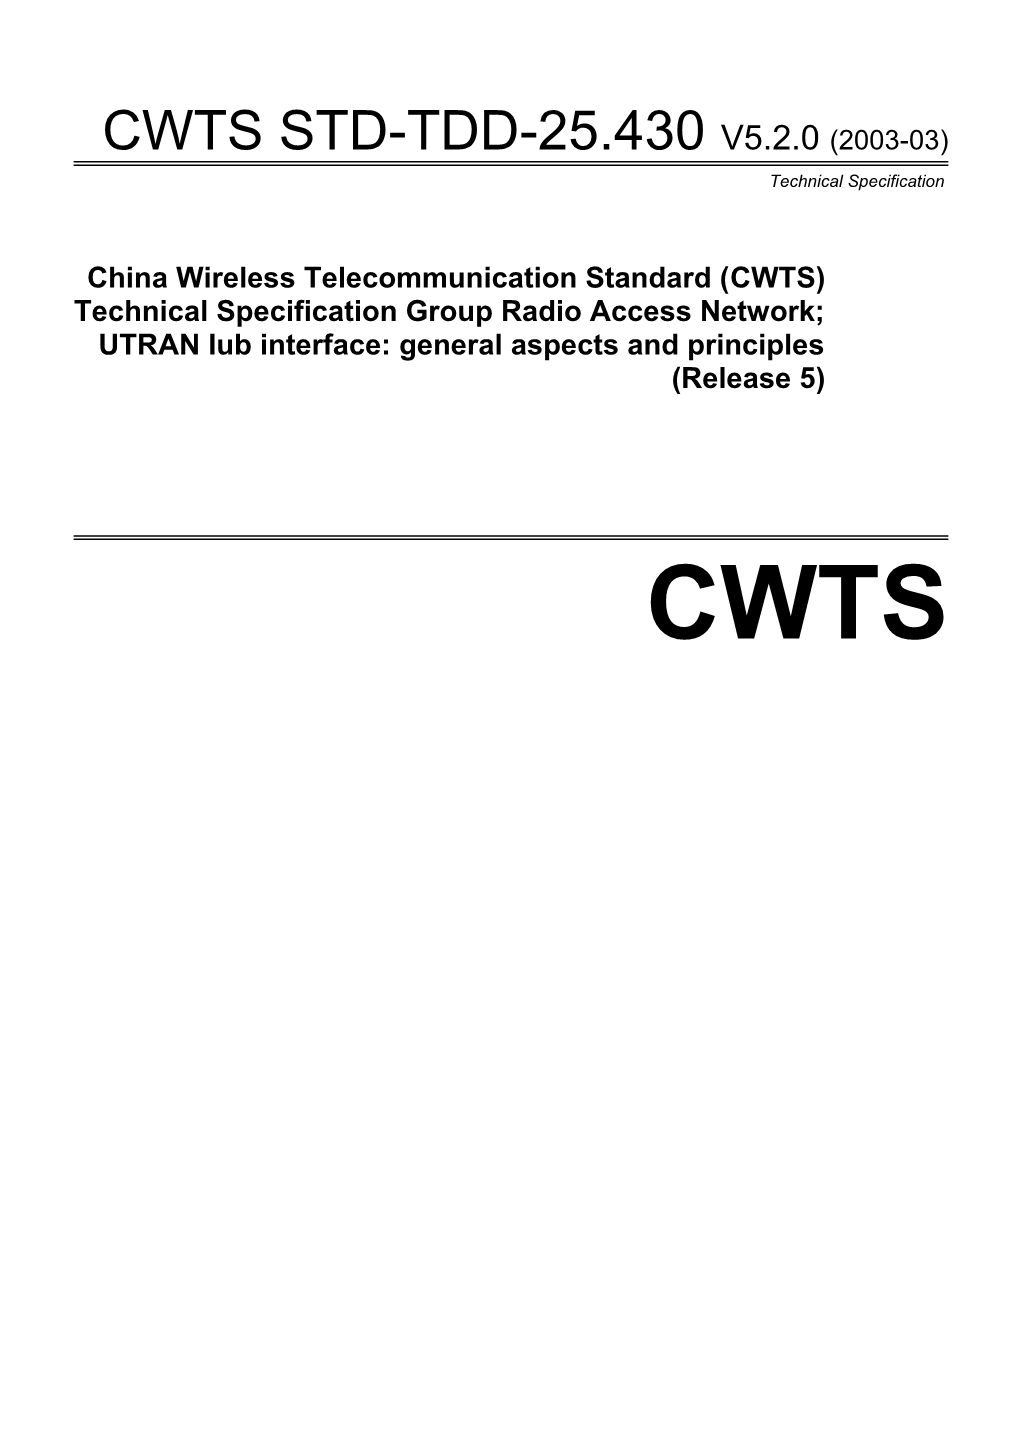 China Wireless Telecommunication Standard (CWTS)